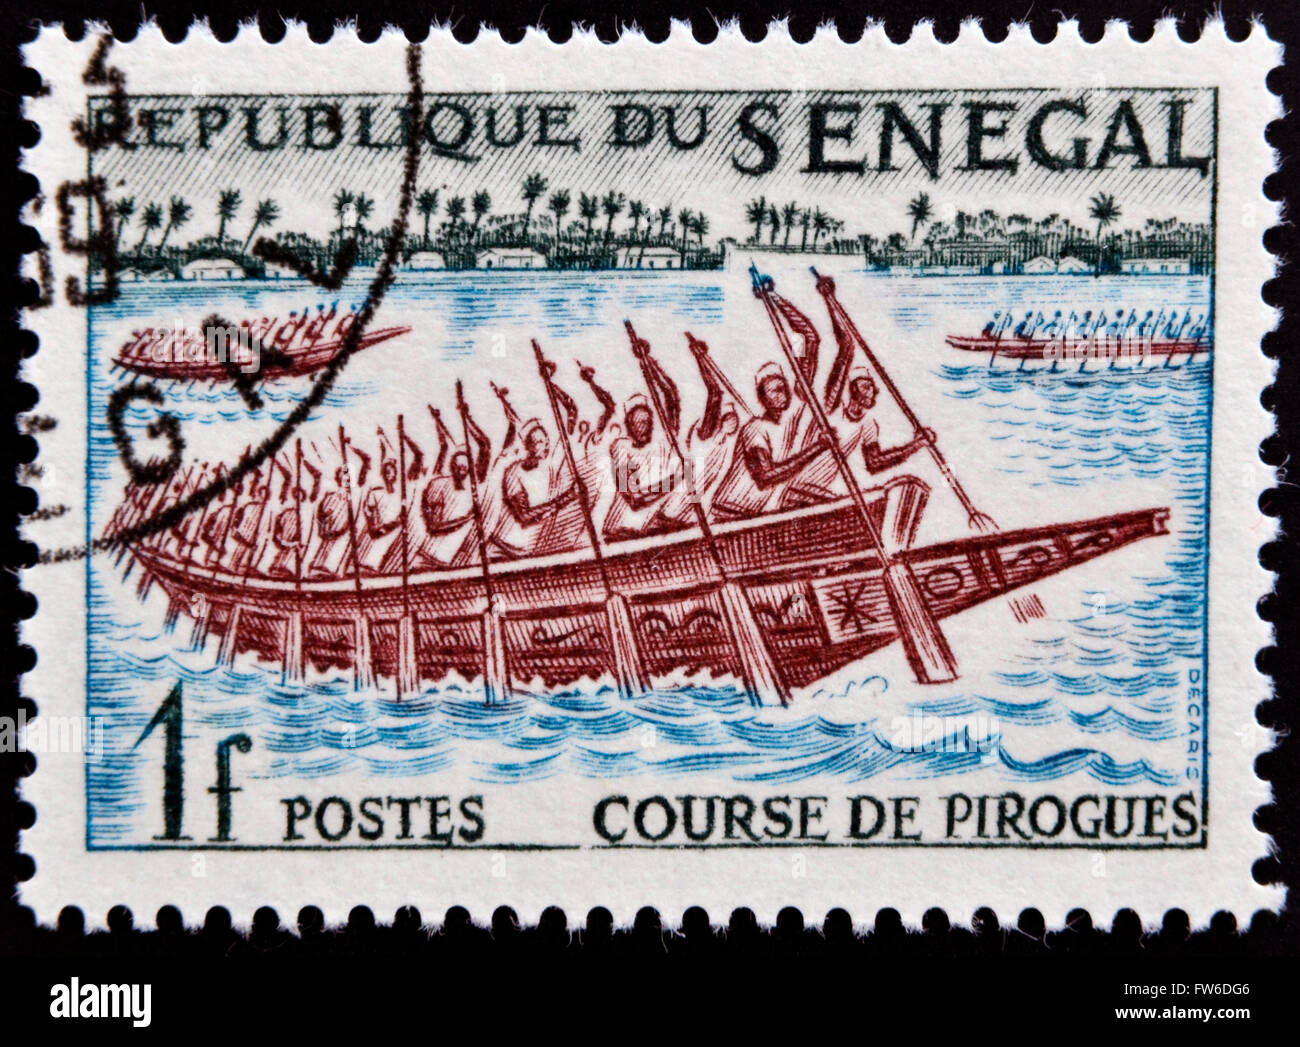 Sénégal - circa 1961 : timbres en Sénégal montre course pirogues, vers 1961 Banque D'Images